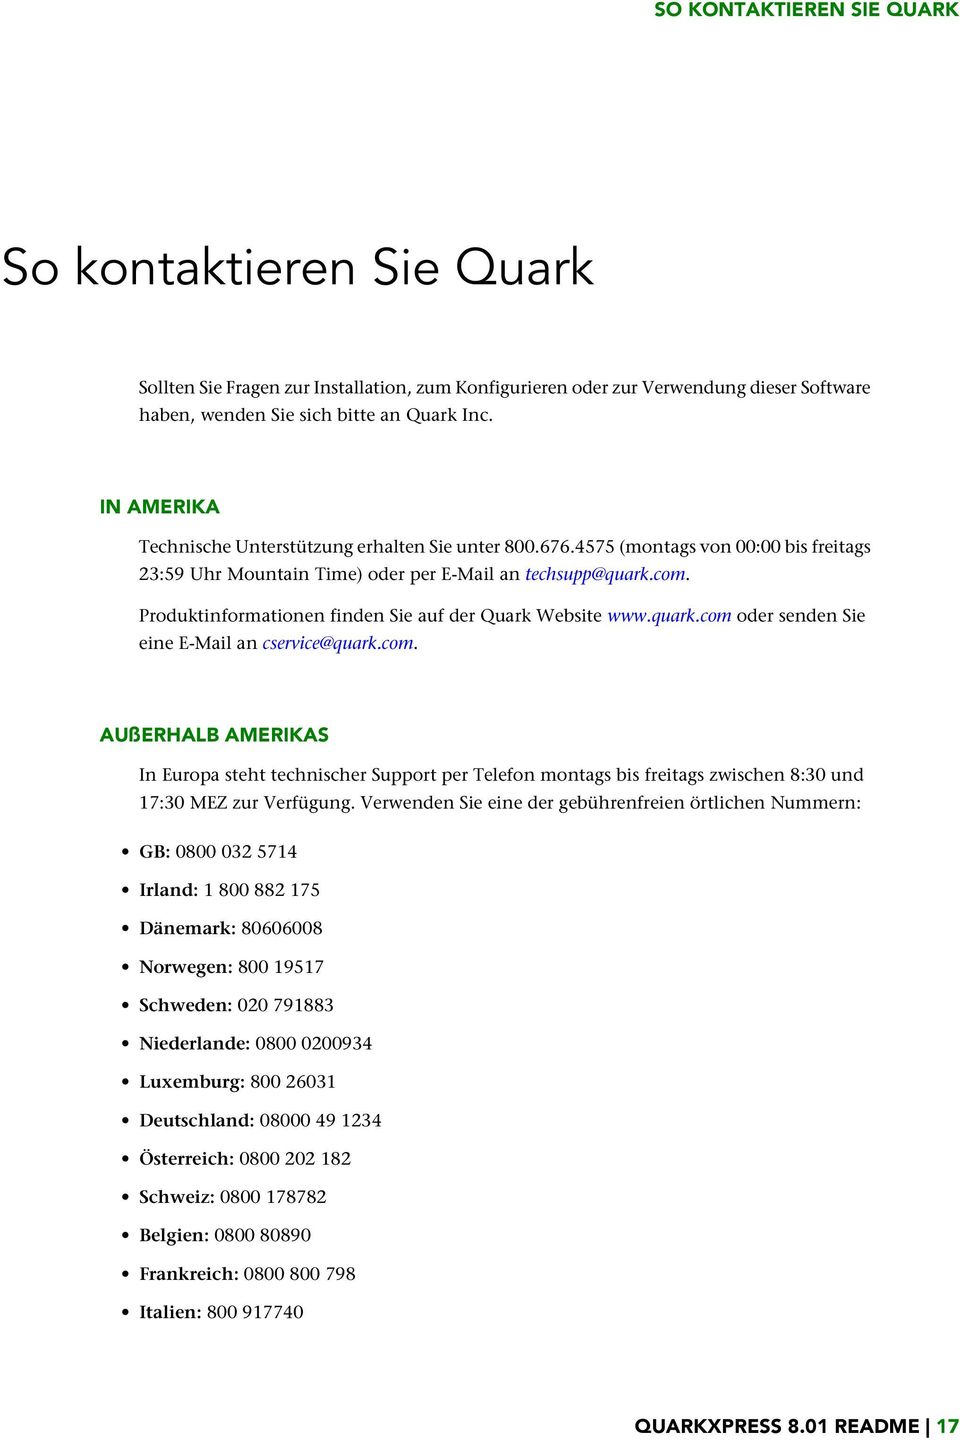 Produktinformationen finden Sie auf der Quark Website www.quark.com oder senden Sie eine E-Mail an cservice@quark.com. AUßERHALB AMERIKAS In Europa steht technischer Support per Telefon montags bis freitags zwischen 8:30 und 17:30 MEZ zur Verfügung.